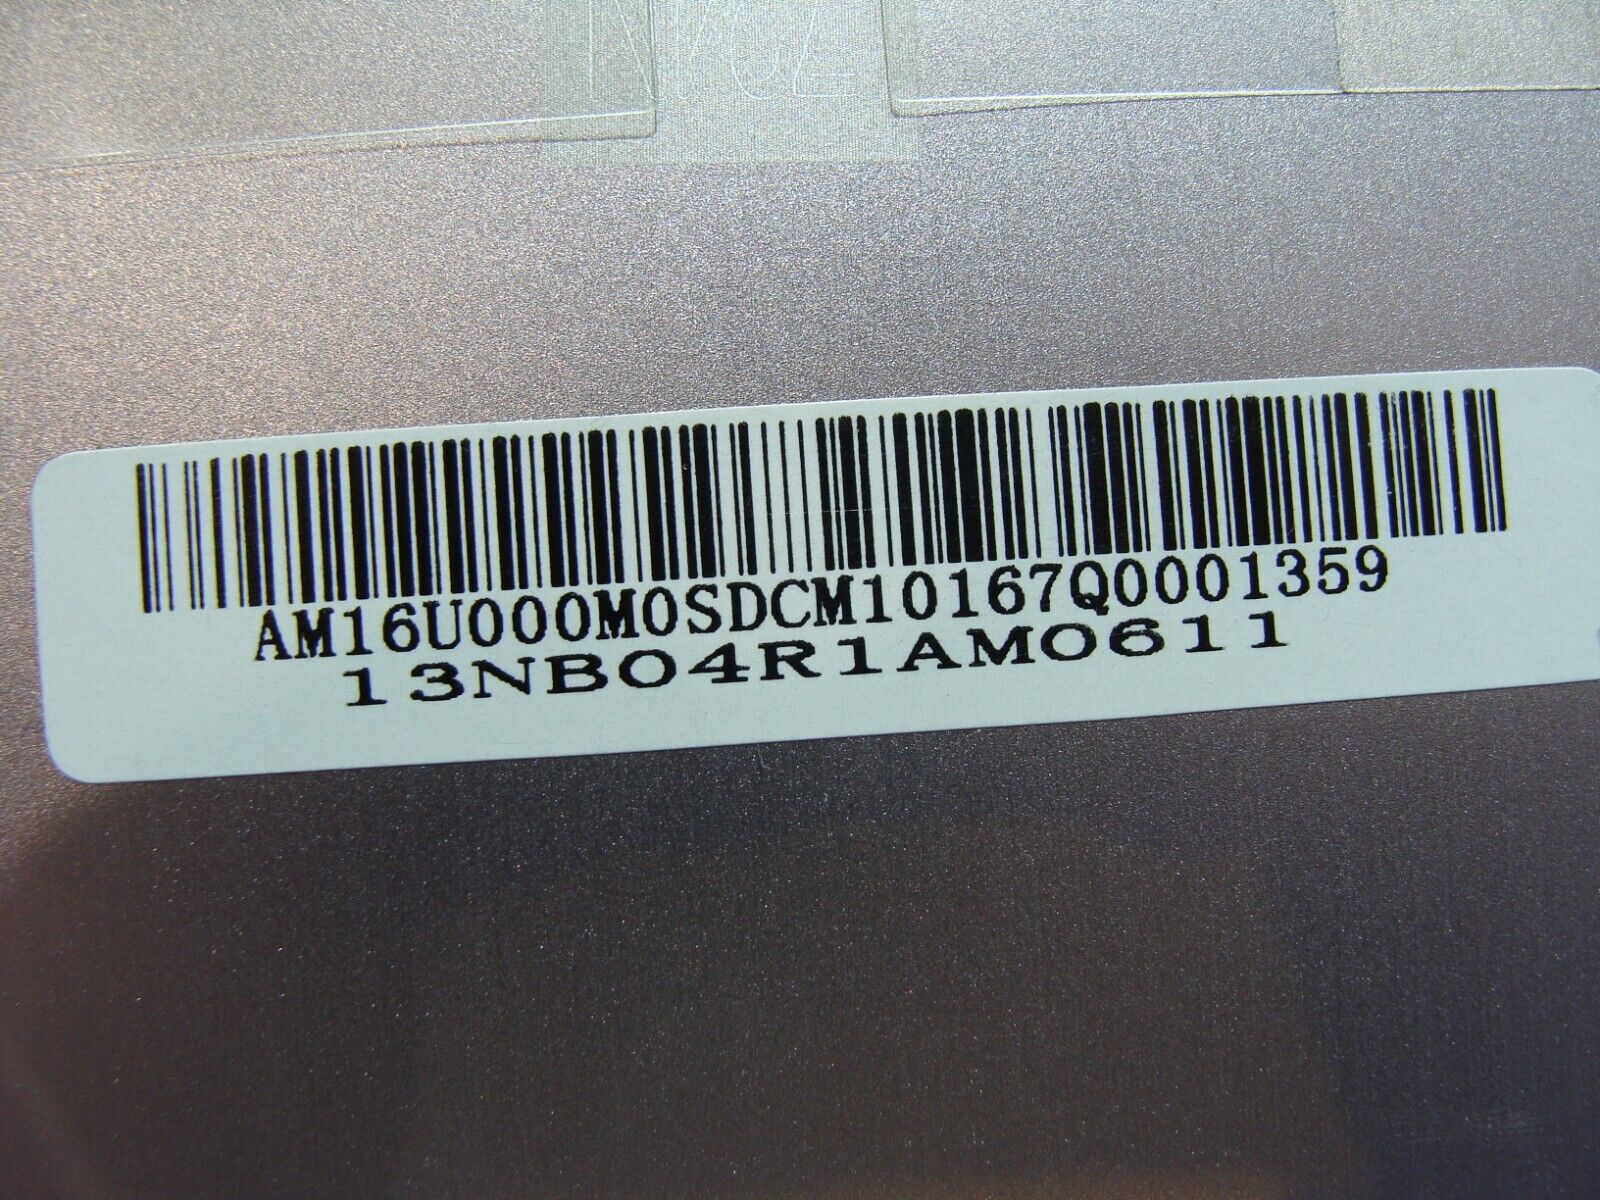 Asus ZenBook 13.3” UX303U Genuine Laptop Bottom Base Case Cover 13NB04R1AM0611